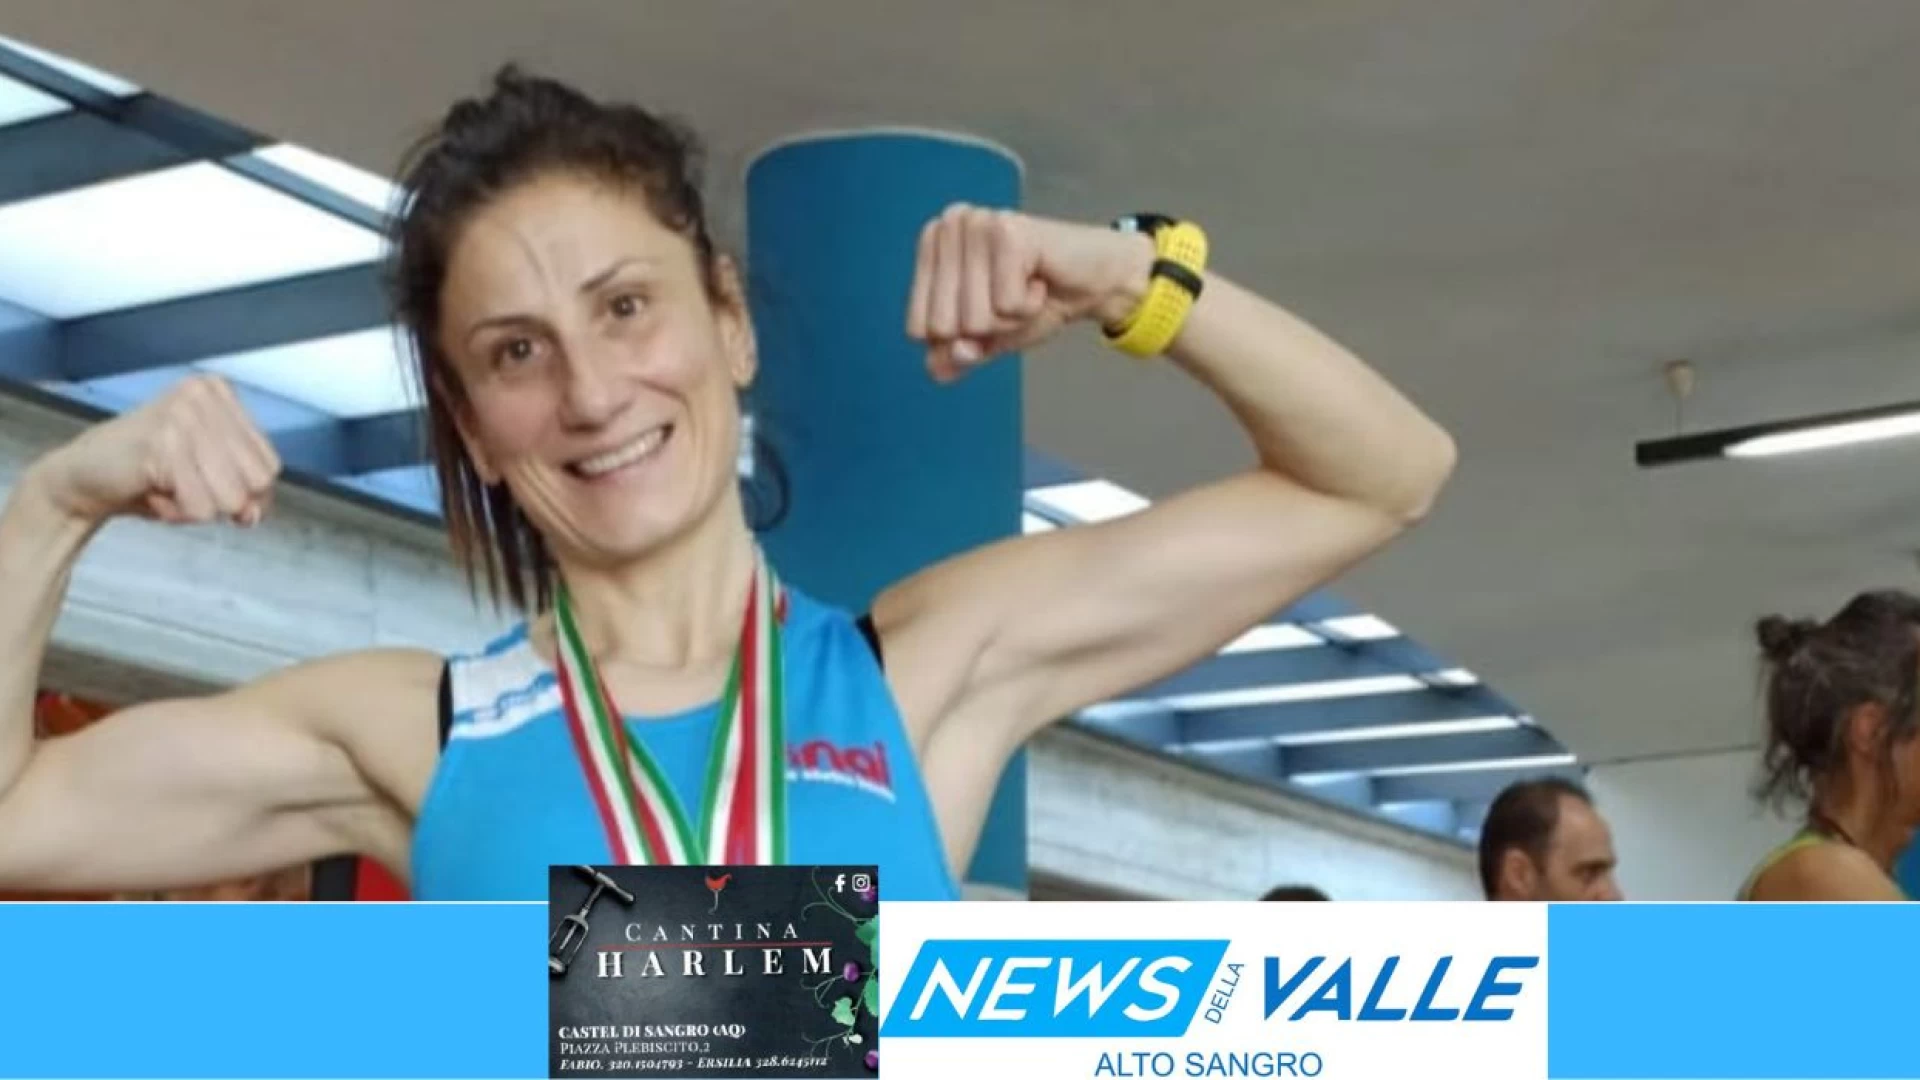 Atletica: Morena Di Benedetto si laurea campionessa italiana indoor sugli 800 metri. Grande gioia in casa Nai.